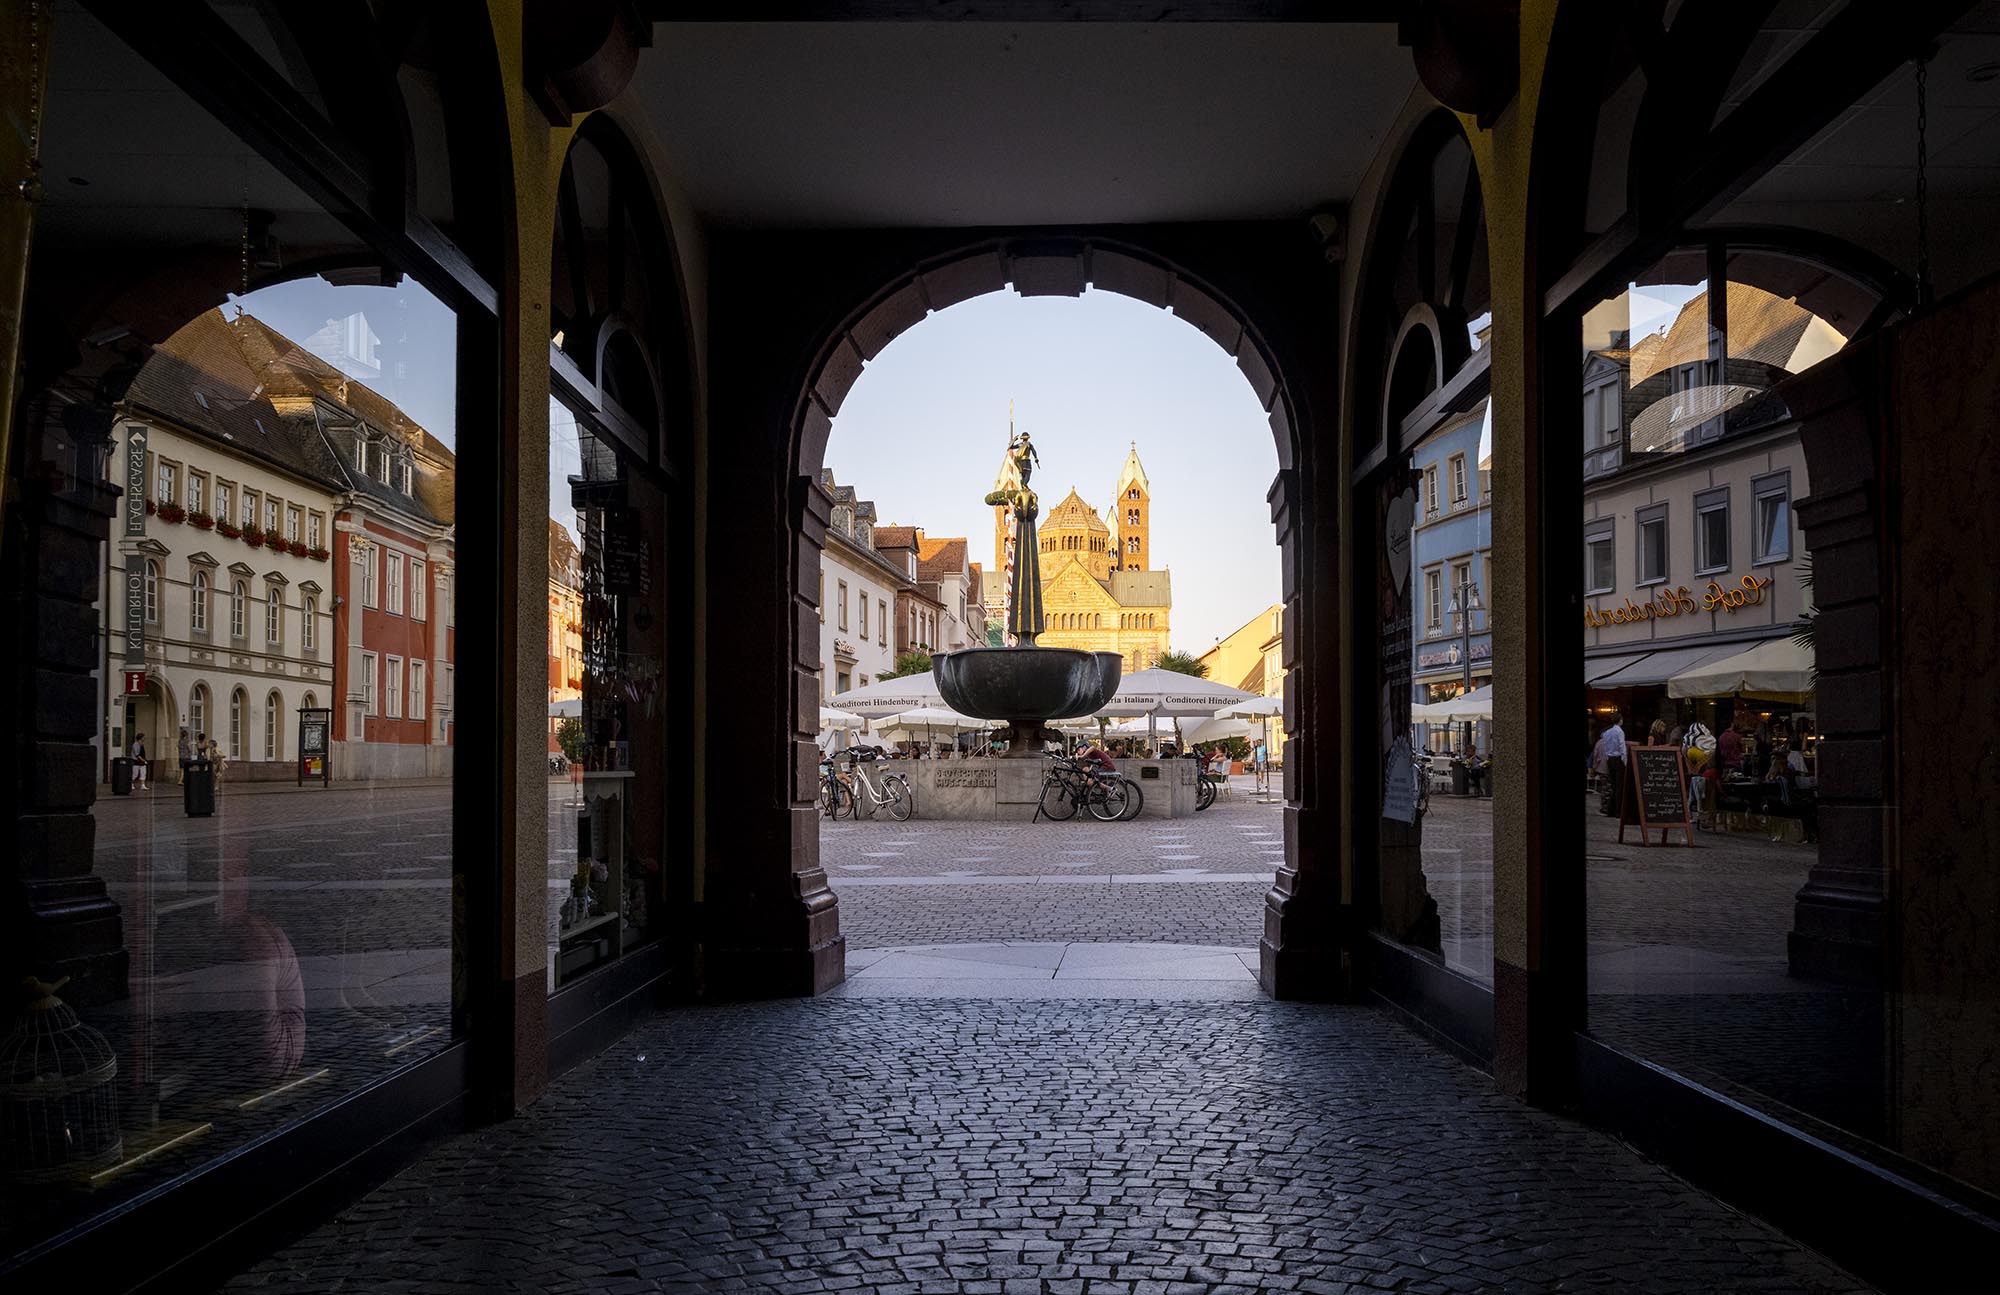 Blick in der Abenddämmerung durch die Arkade des Gebäudes Alte Münz auf den Platz vor dem Gebäude mit dem St. Georgsbrunnen. In den Schaufenstern der Geschäfte spiegeln sich historische Gebäude